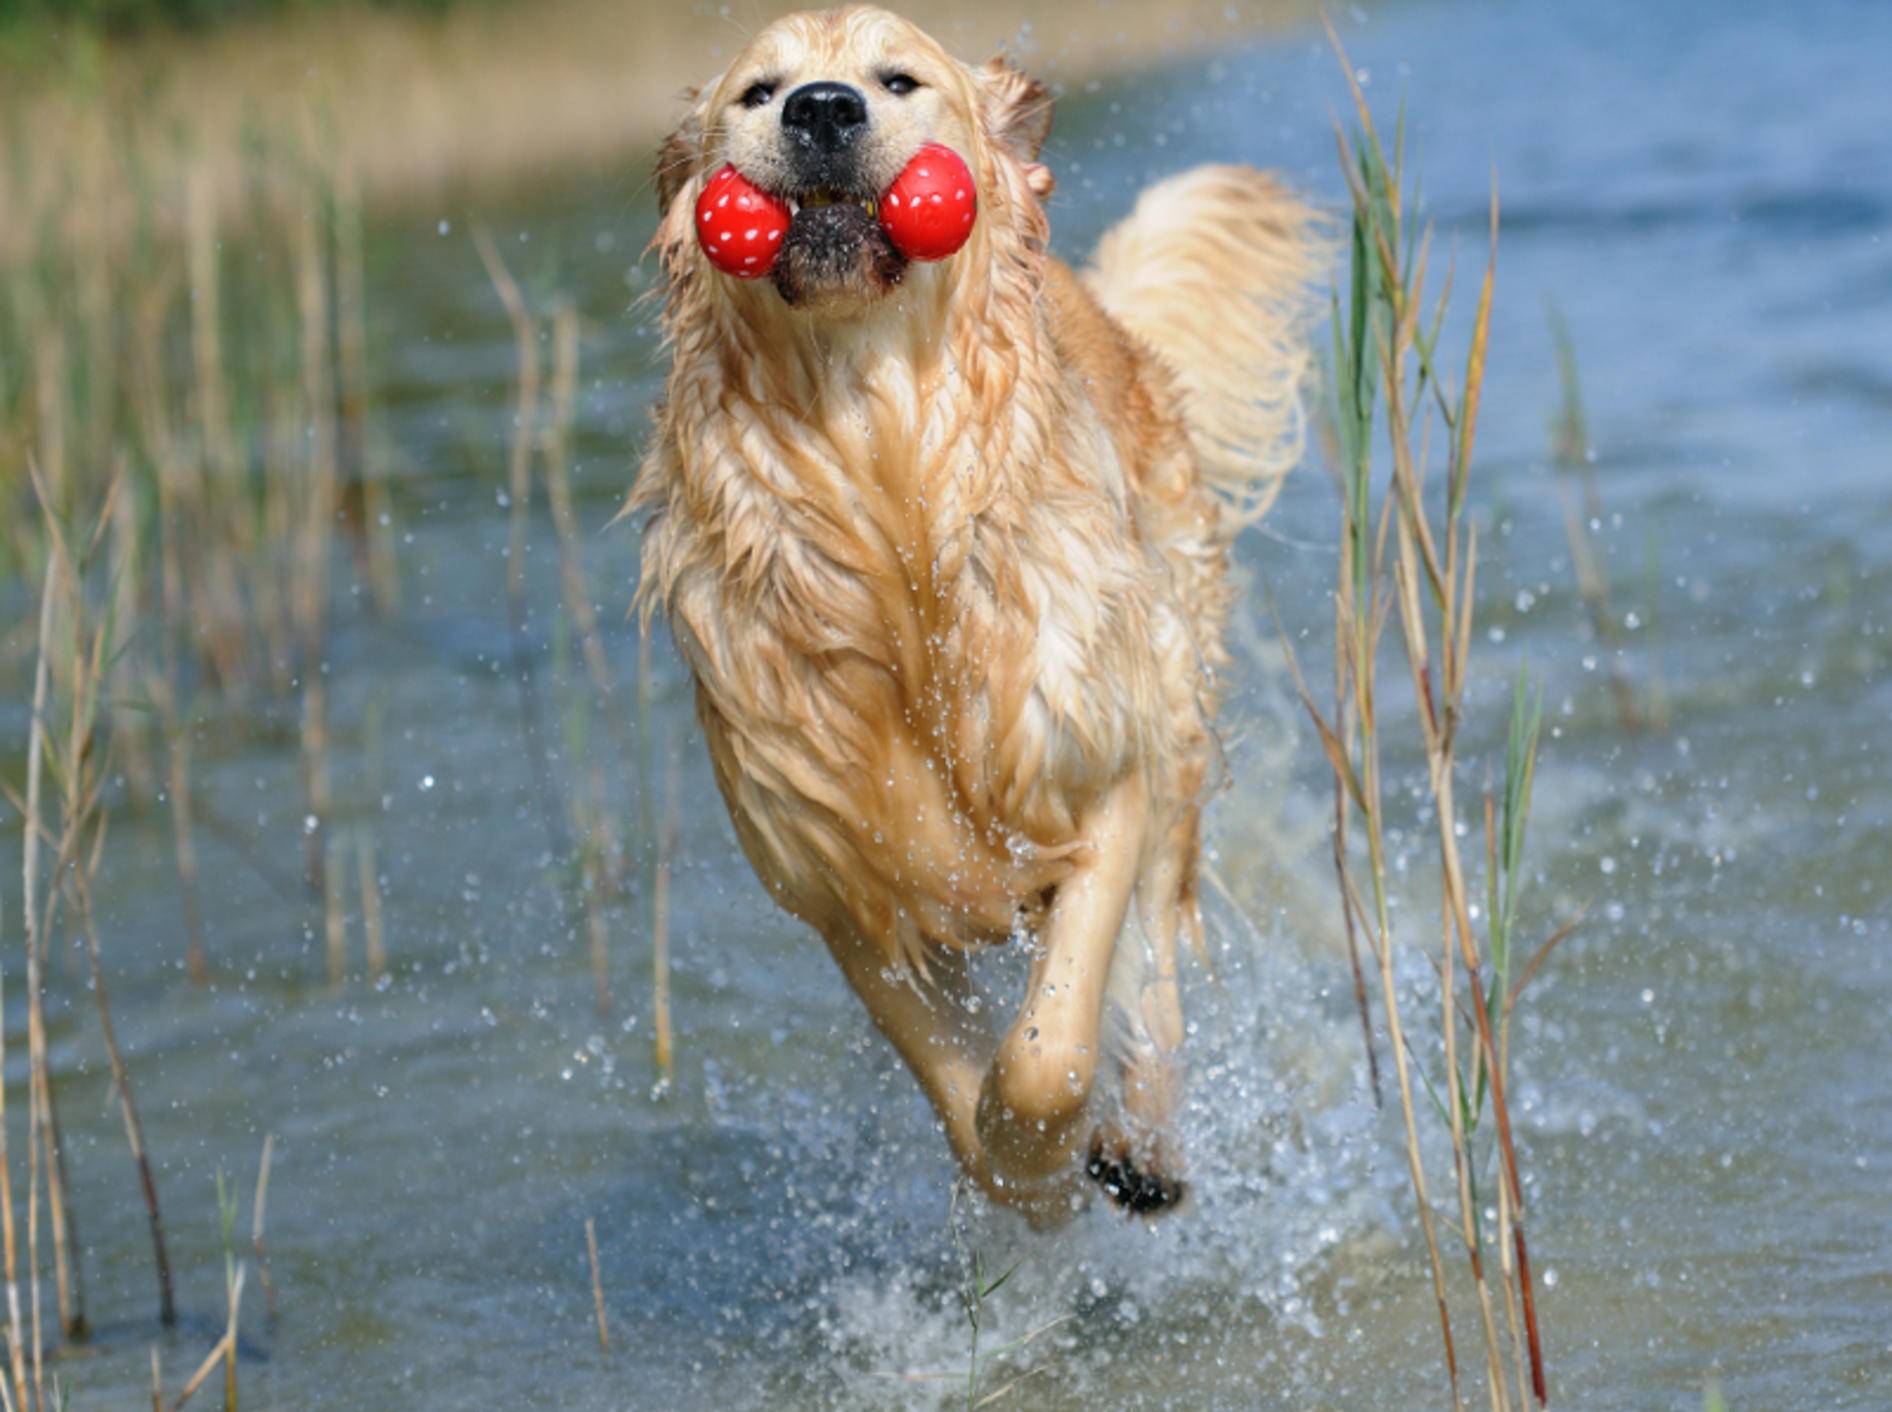 Plitsch, Platsch! Dieser Hund hat Spaß im Wasser – Shutterstock / AnetaPics